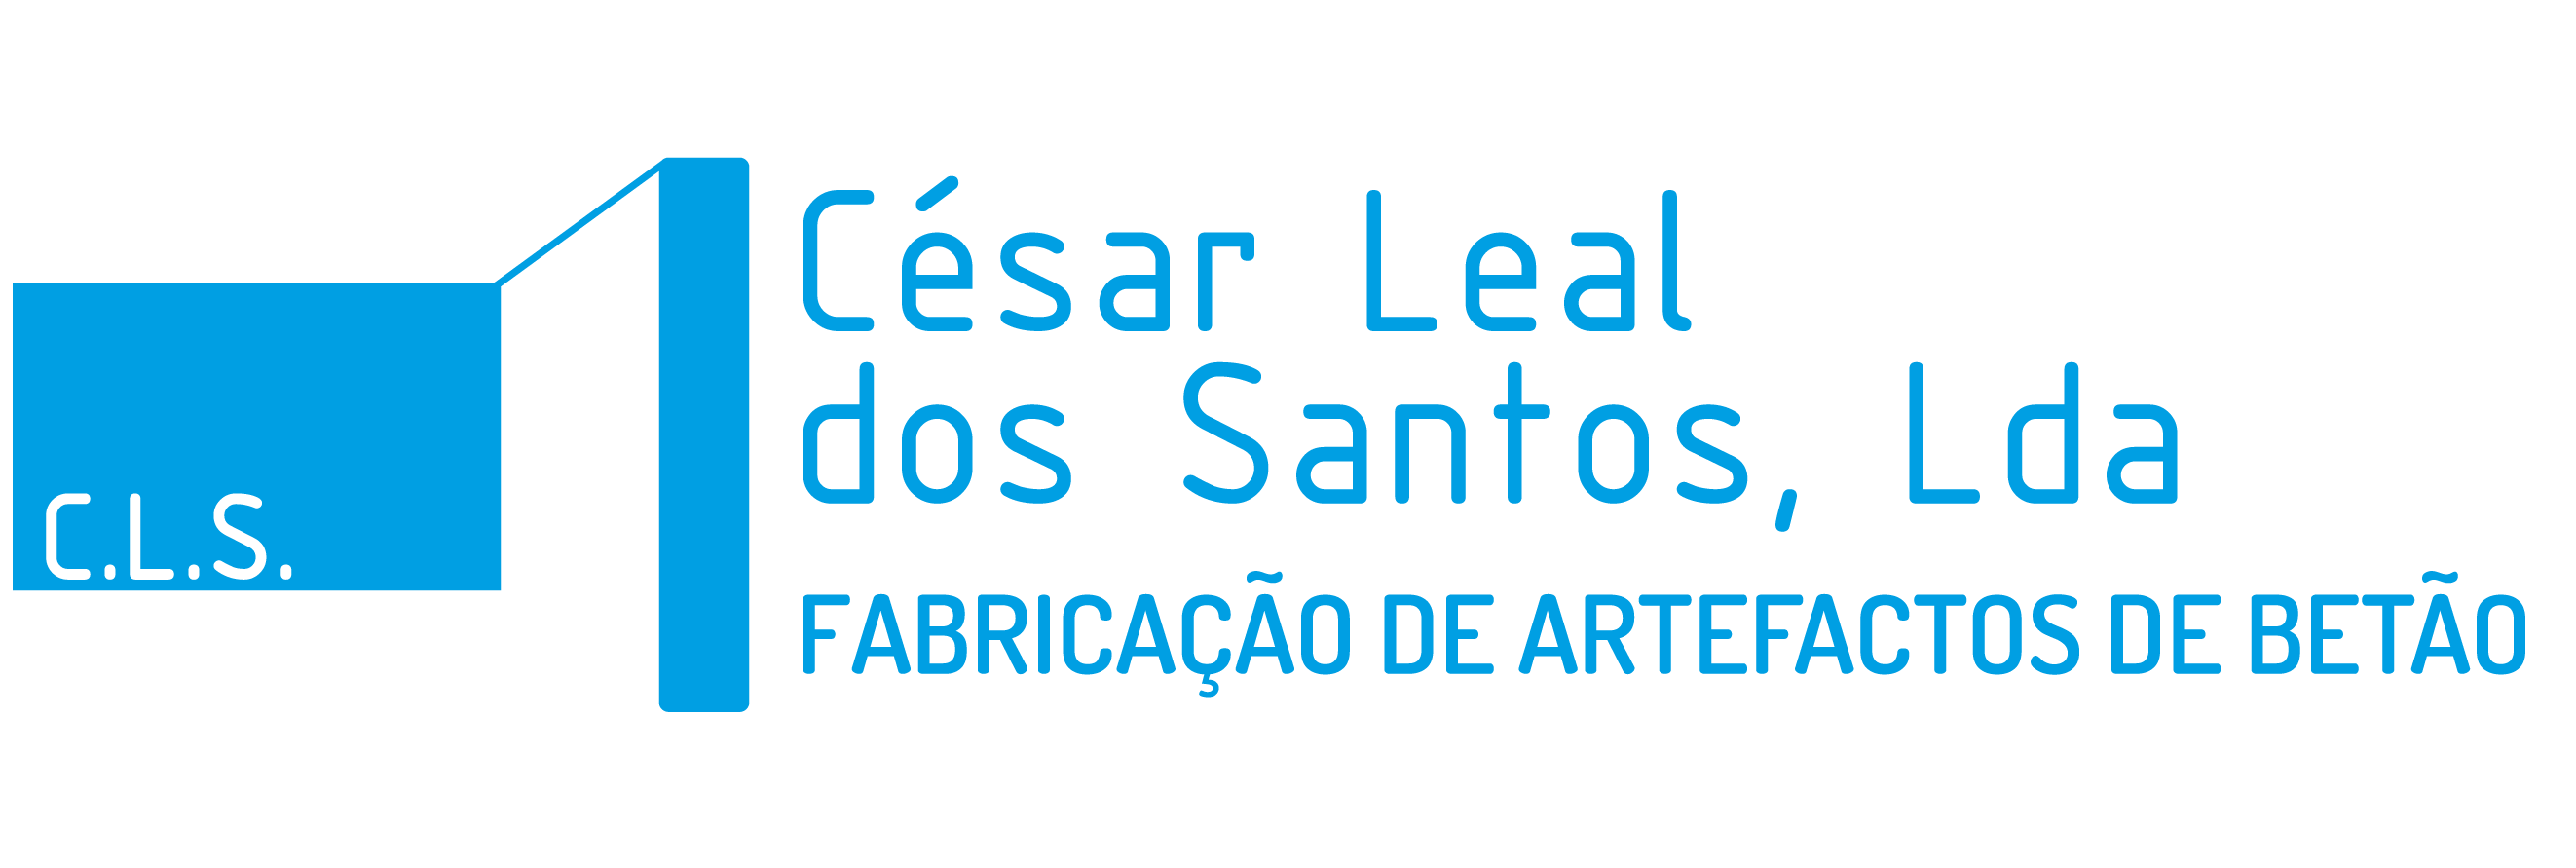 César Leal dos Santos, Lda.